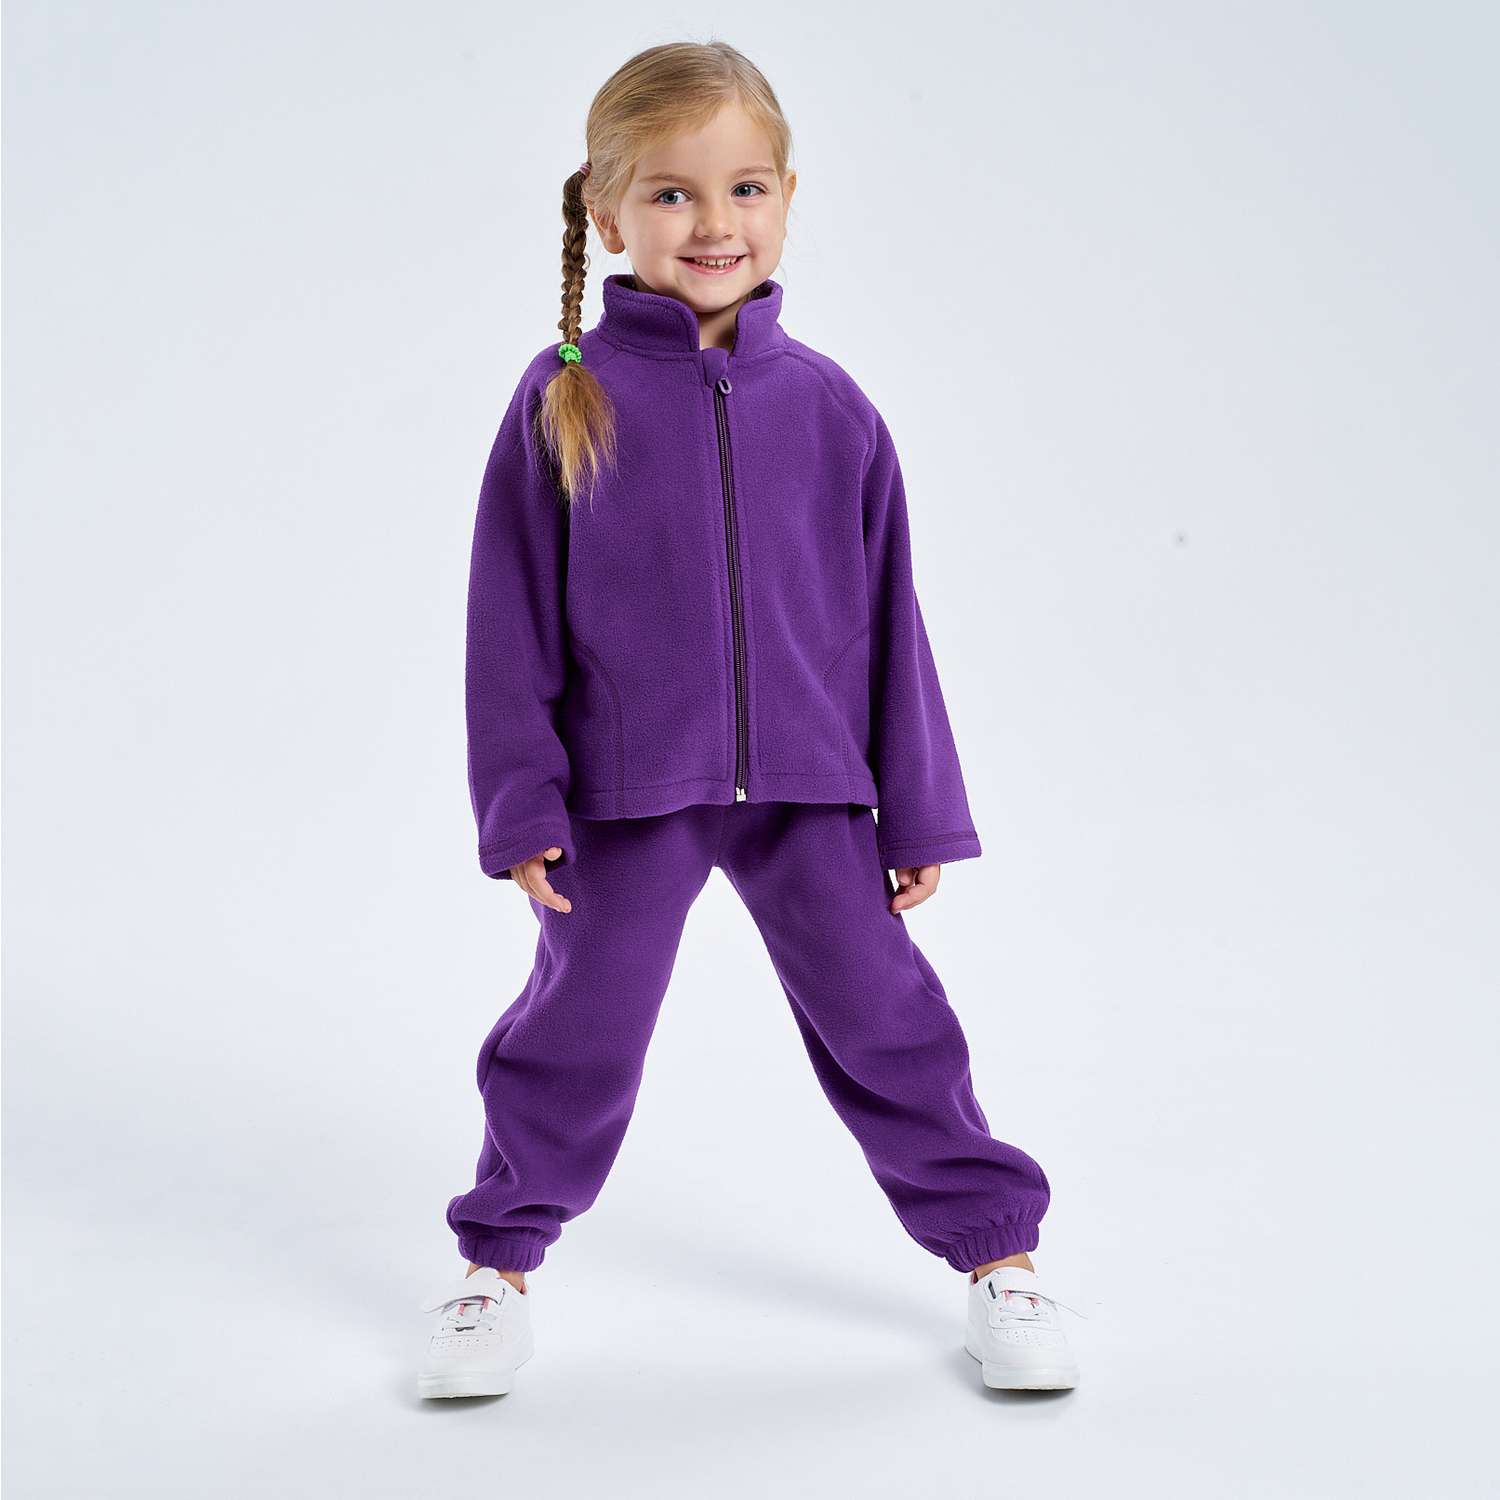 Костюм CHILDREAM костюм флисовый поддева фиолетовый - фото 1